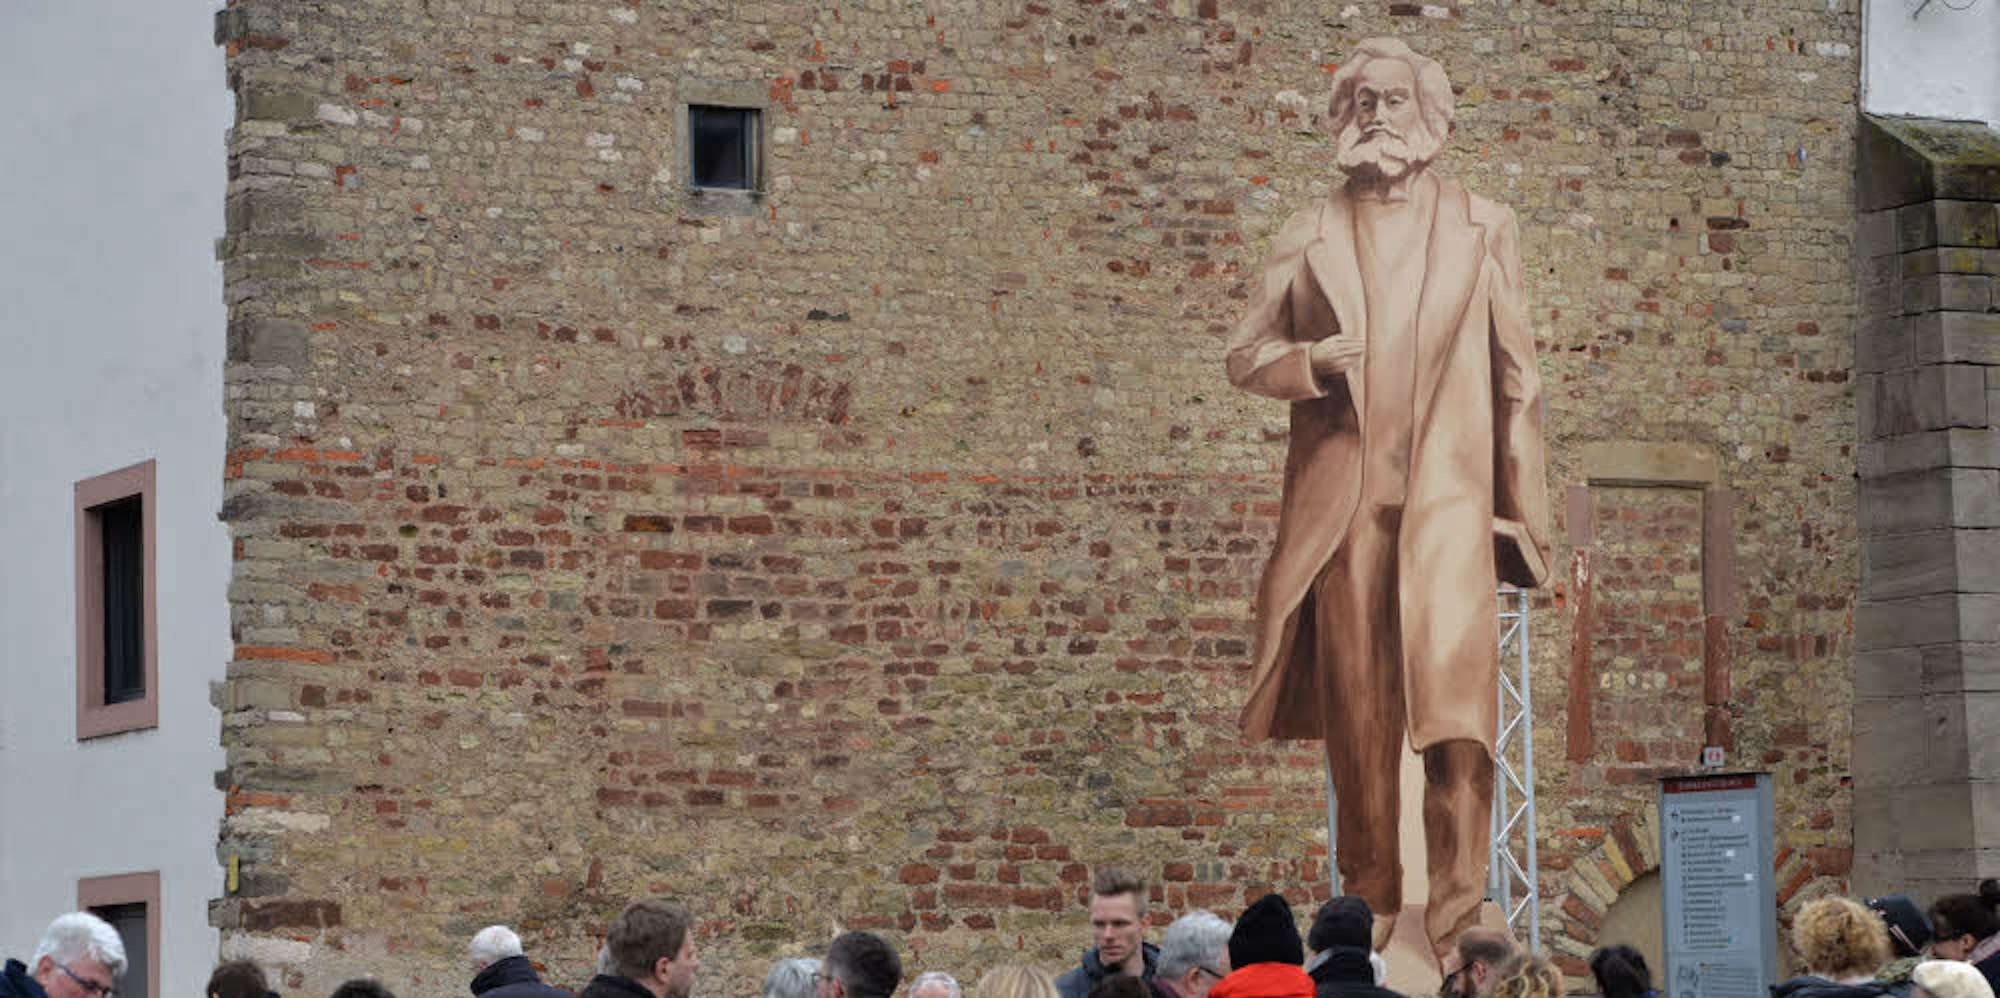 Er wollte als Philosoph die Welt verändern. Hölzerner Schattenriss der geplanten Karl-Marx-Statue in Trier